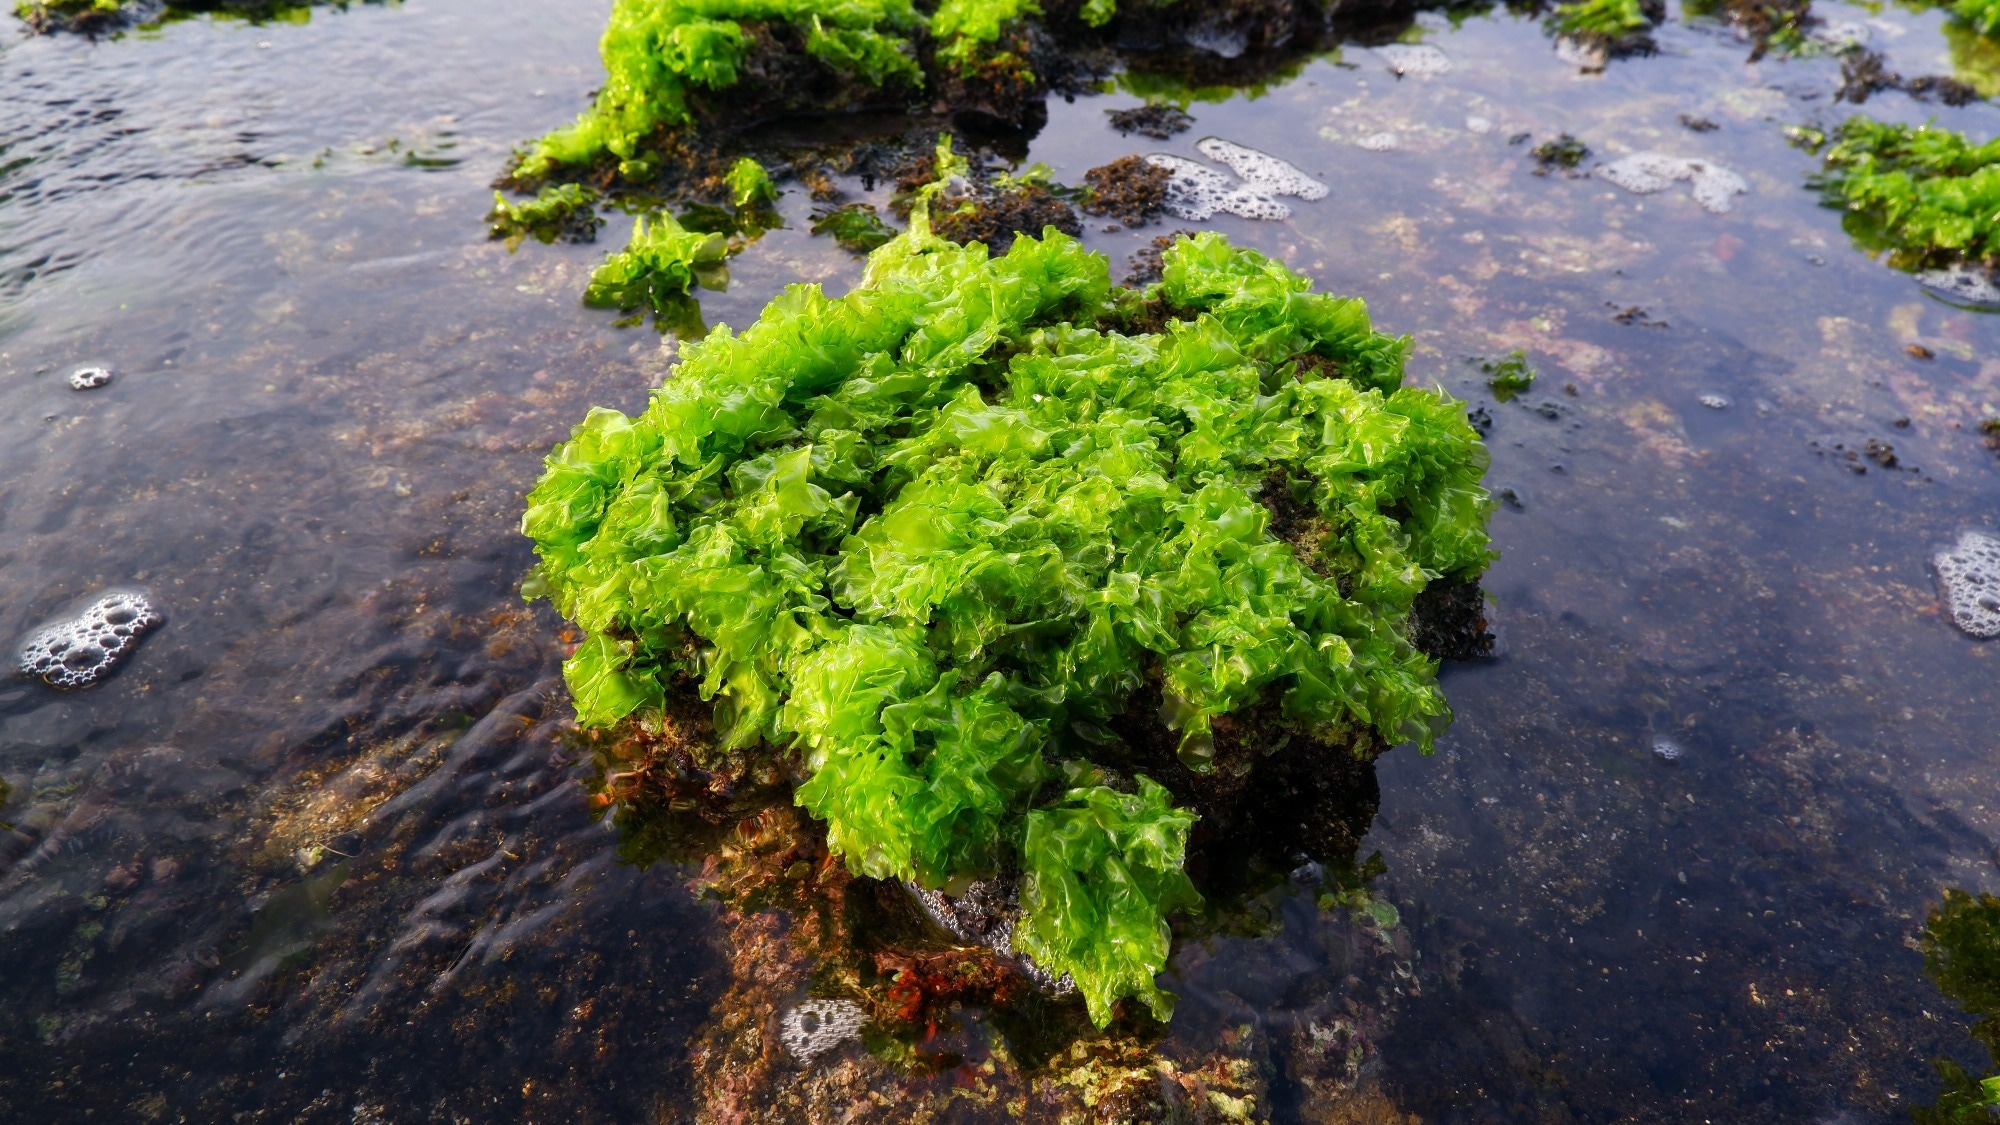 مقاله مروری: کاهوی دریایی Ulva sensu lato: غذای آینده با مواد فعال زیستی برای سلامتی.  اعتبار تصویر: f.maliki / Shutterstock